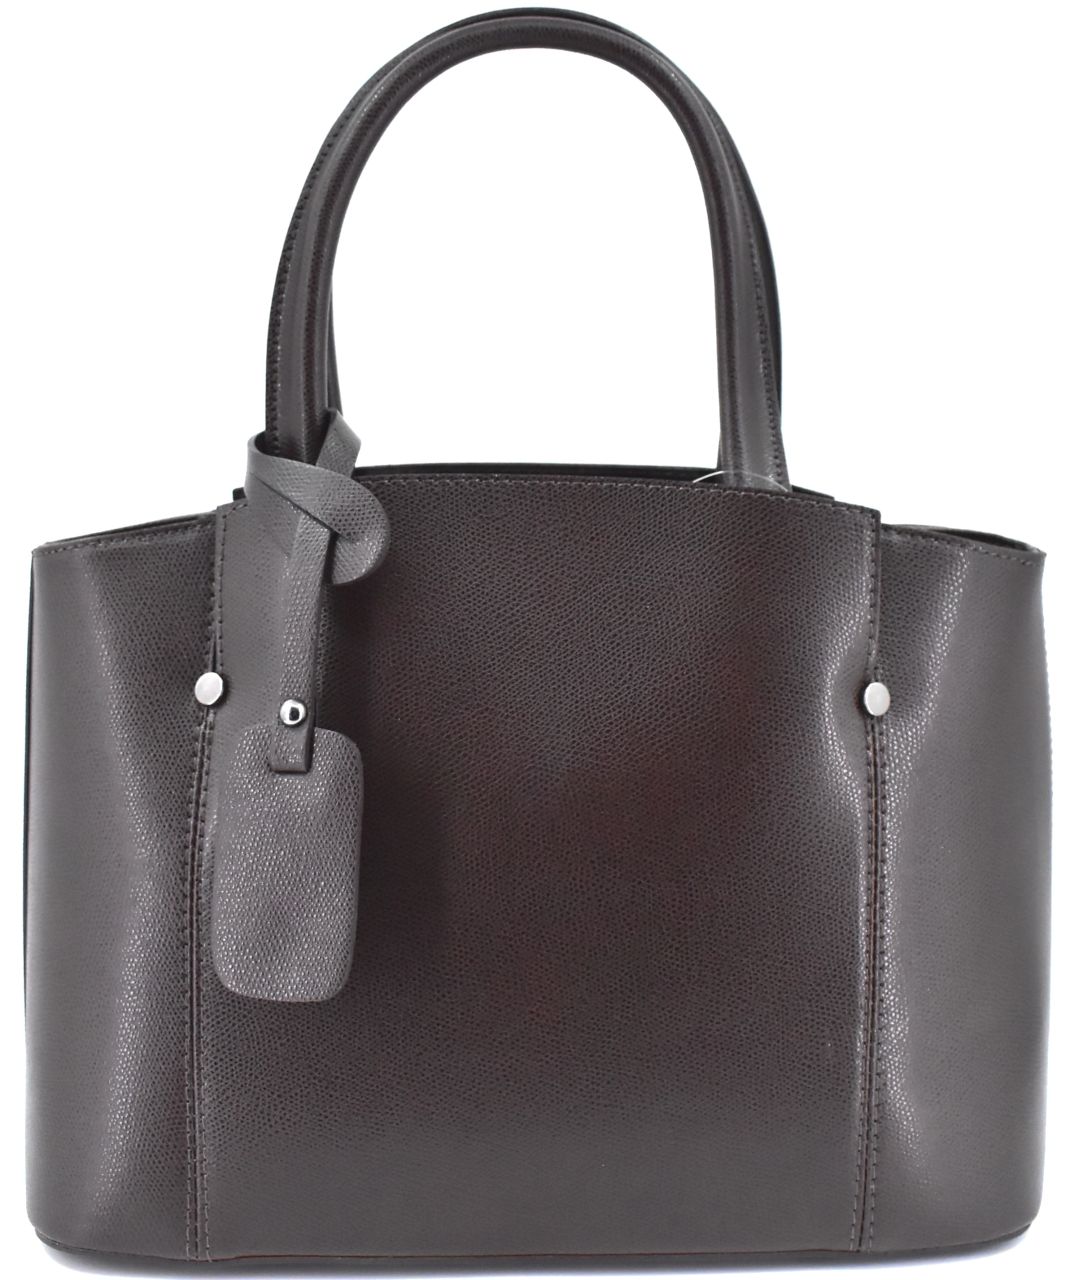 Luxusní dámská kožená kabelka Shopper - tmavě hnědá